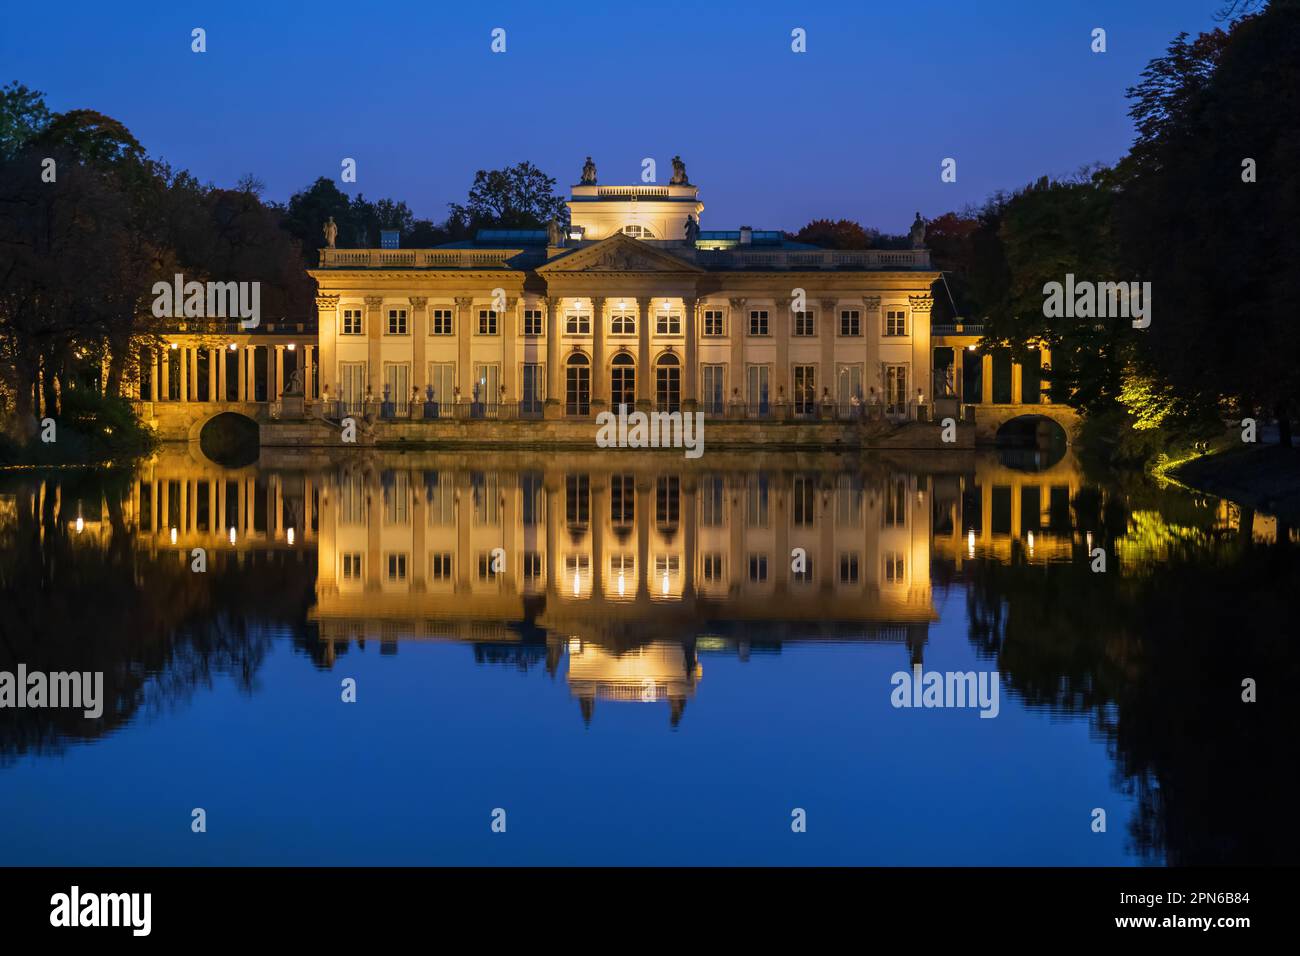 Il Palazzo sull'isola illuminato di notte nel Parco reale Lazienki nella città di Varsavia, Polonia. Residenza estiva del re Stanisław agosto Poniatowsk Foto Stock